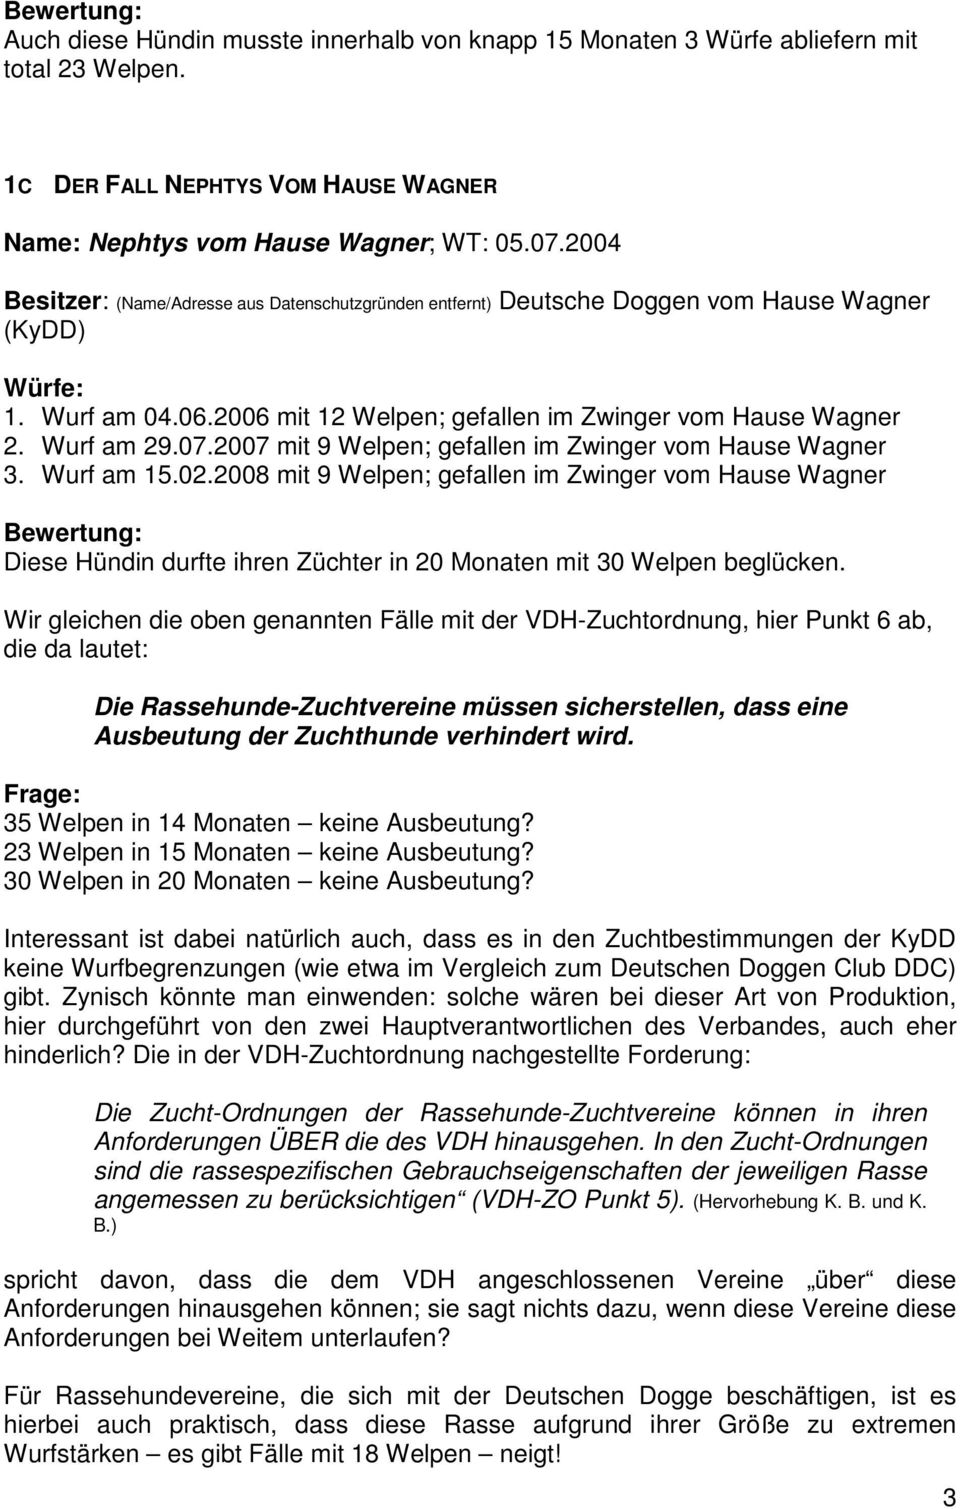 2007 mit 9 Welpen; gefallen im Zwinger vom Hause Wagner 3. Wurf am 15.02.